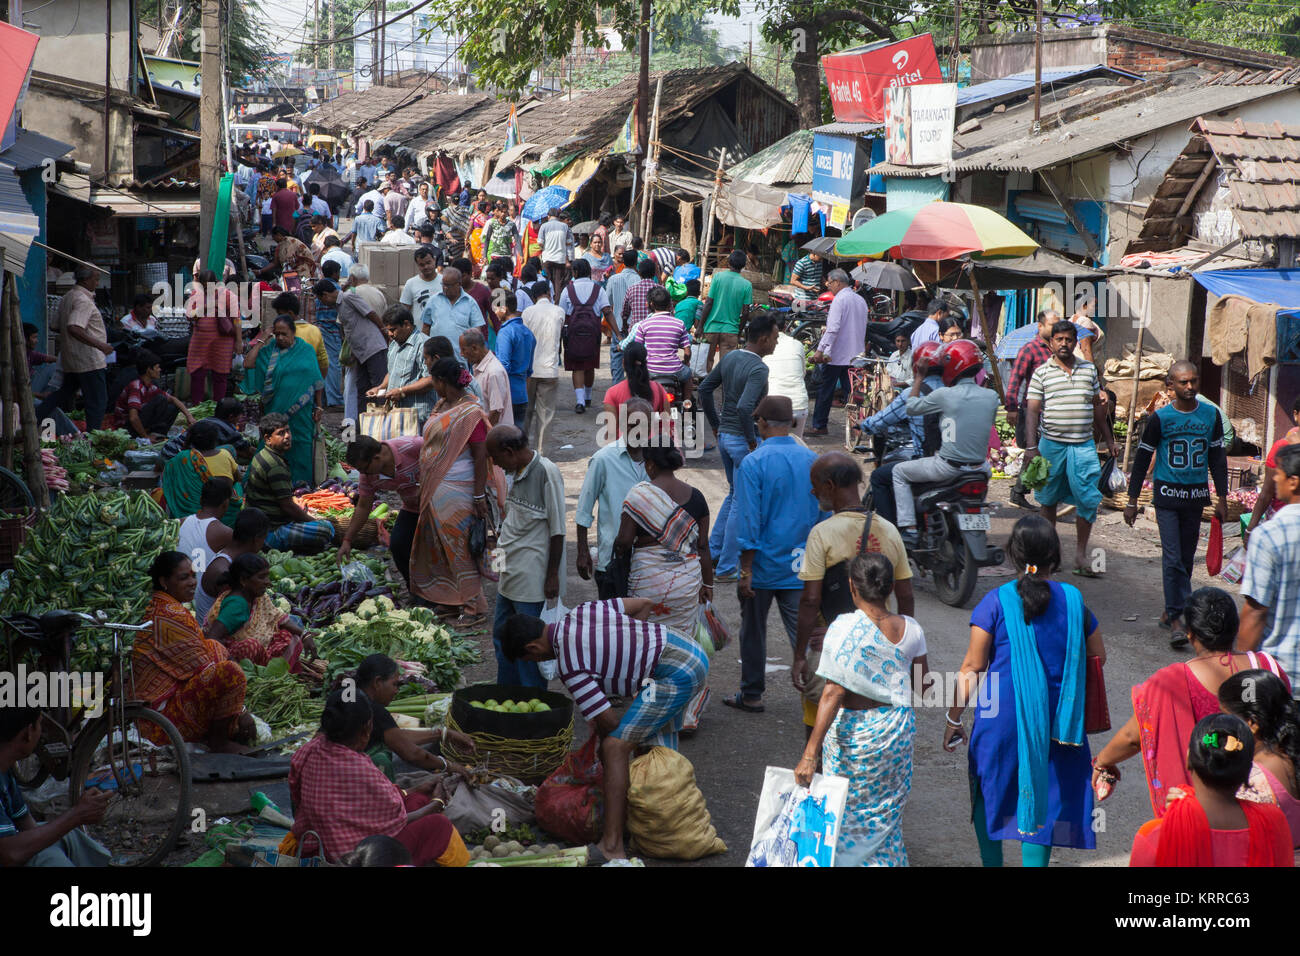 Vegetable market in the Garia district of Kolkata, India Stock Photo